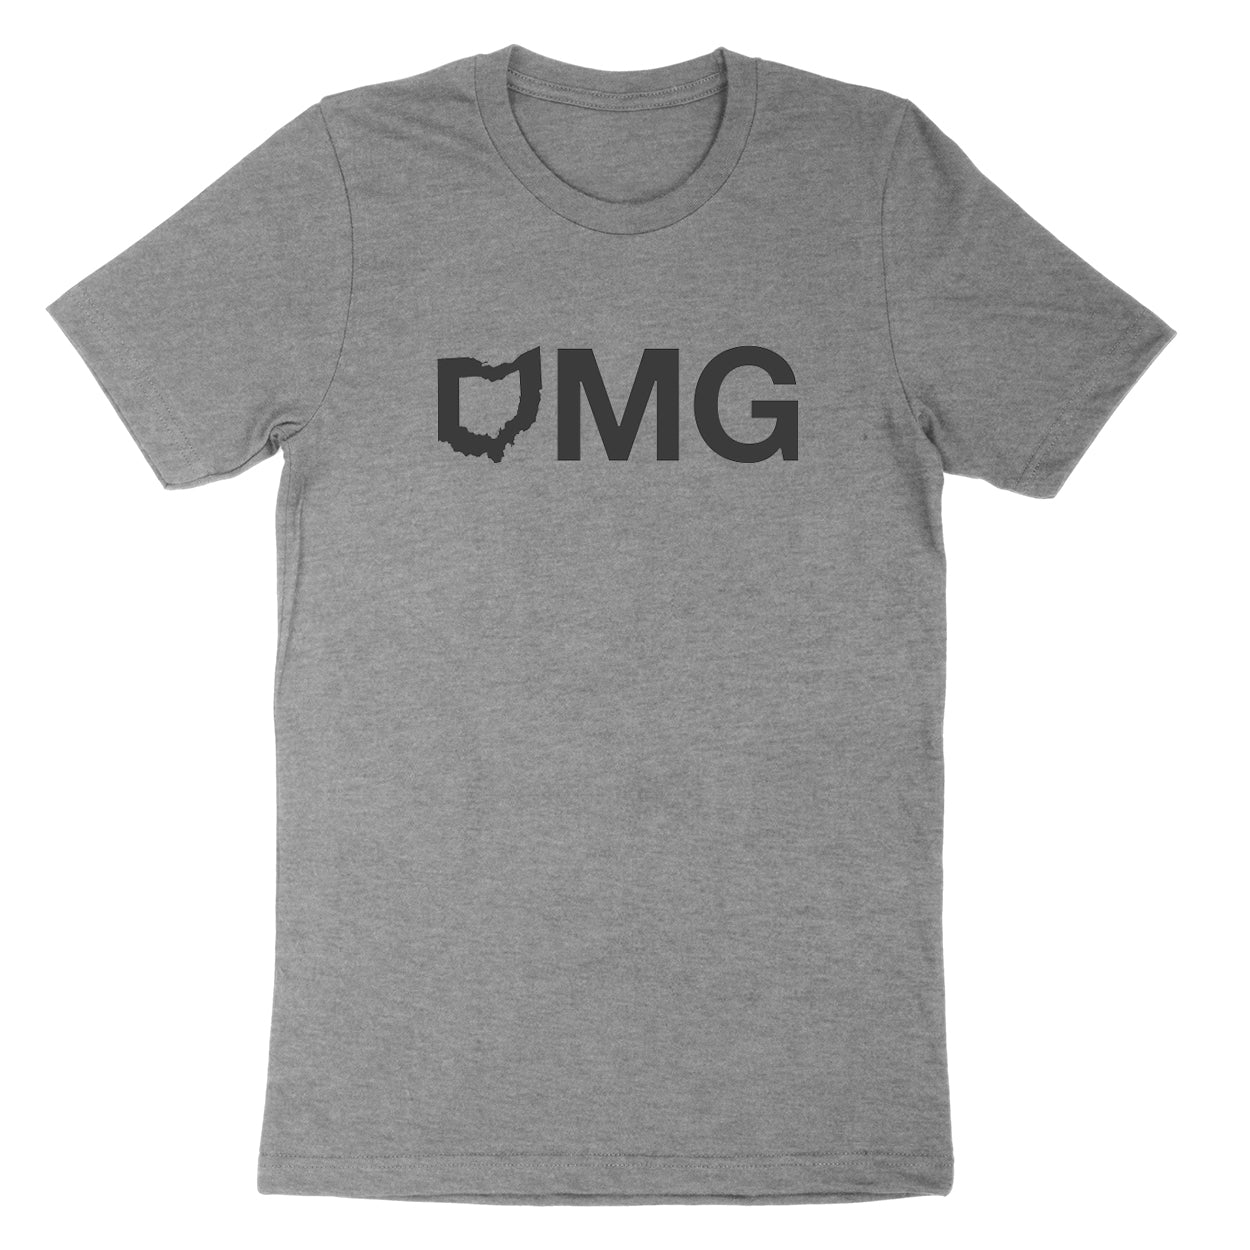 Omg Ohio Youth T-Shirt - Clothe Ohio - Soft Ohio Shirts